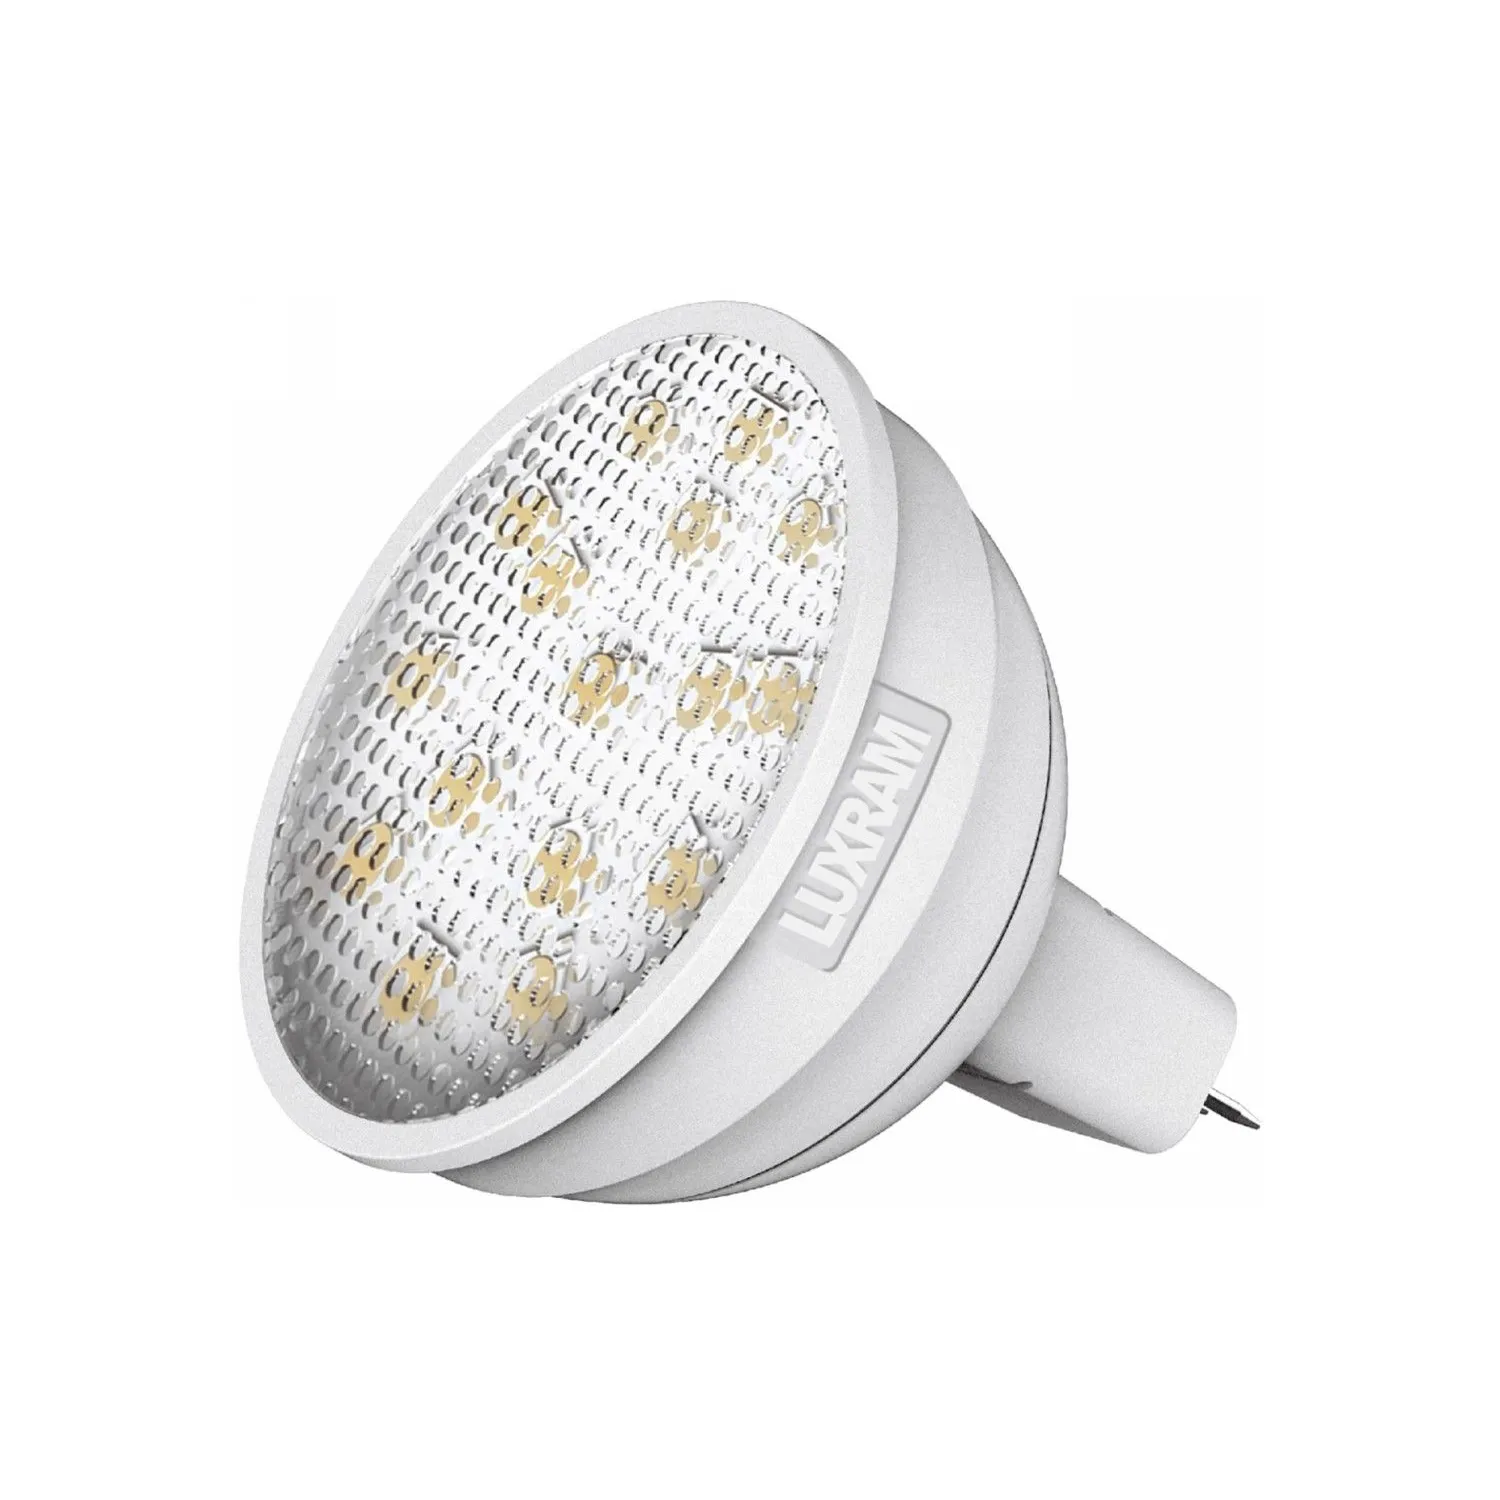 Curvodo LED MR16 12V 6W Warm White 2700K 450lm (White) (1 1)